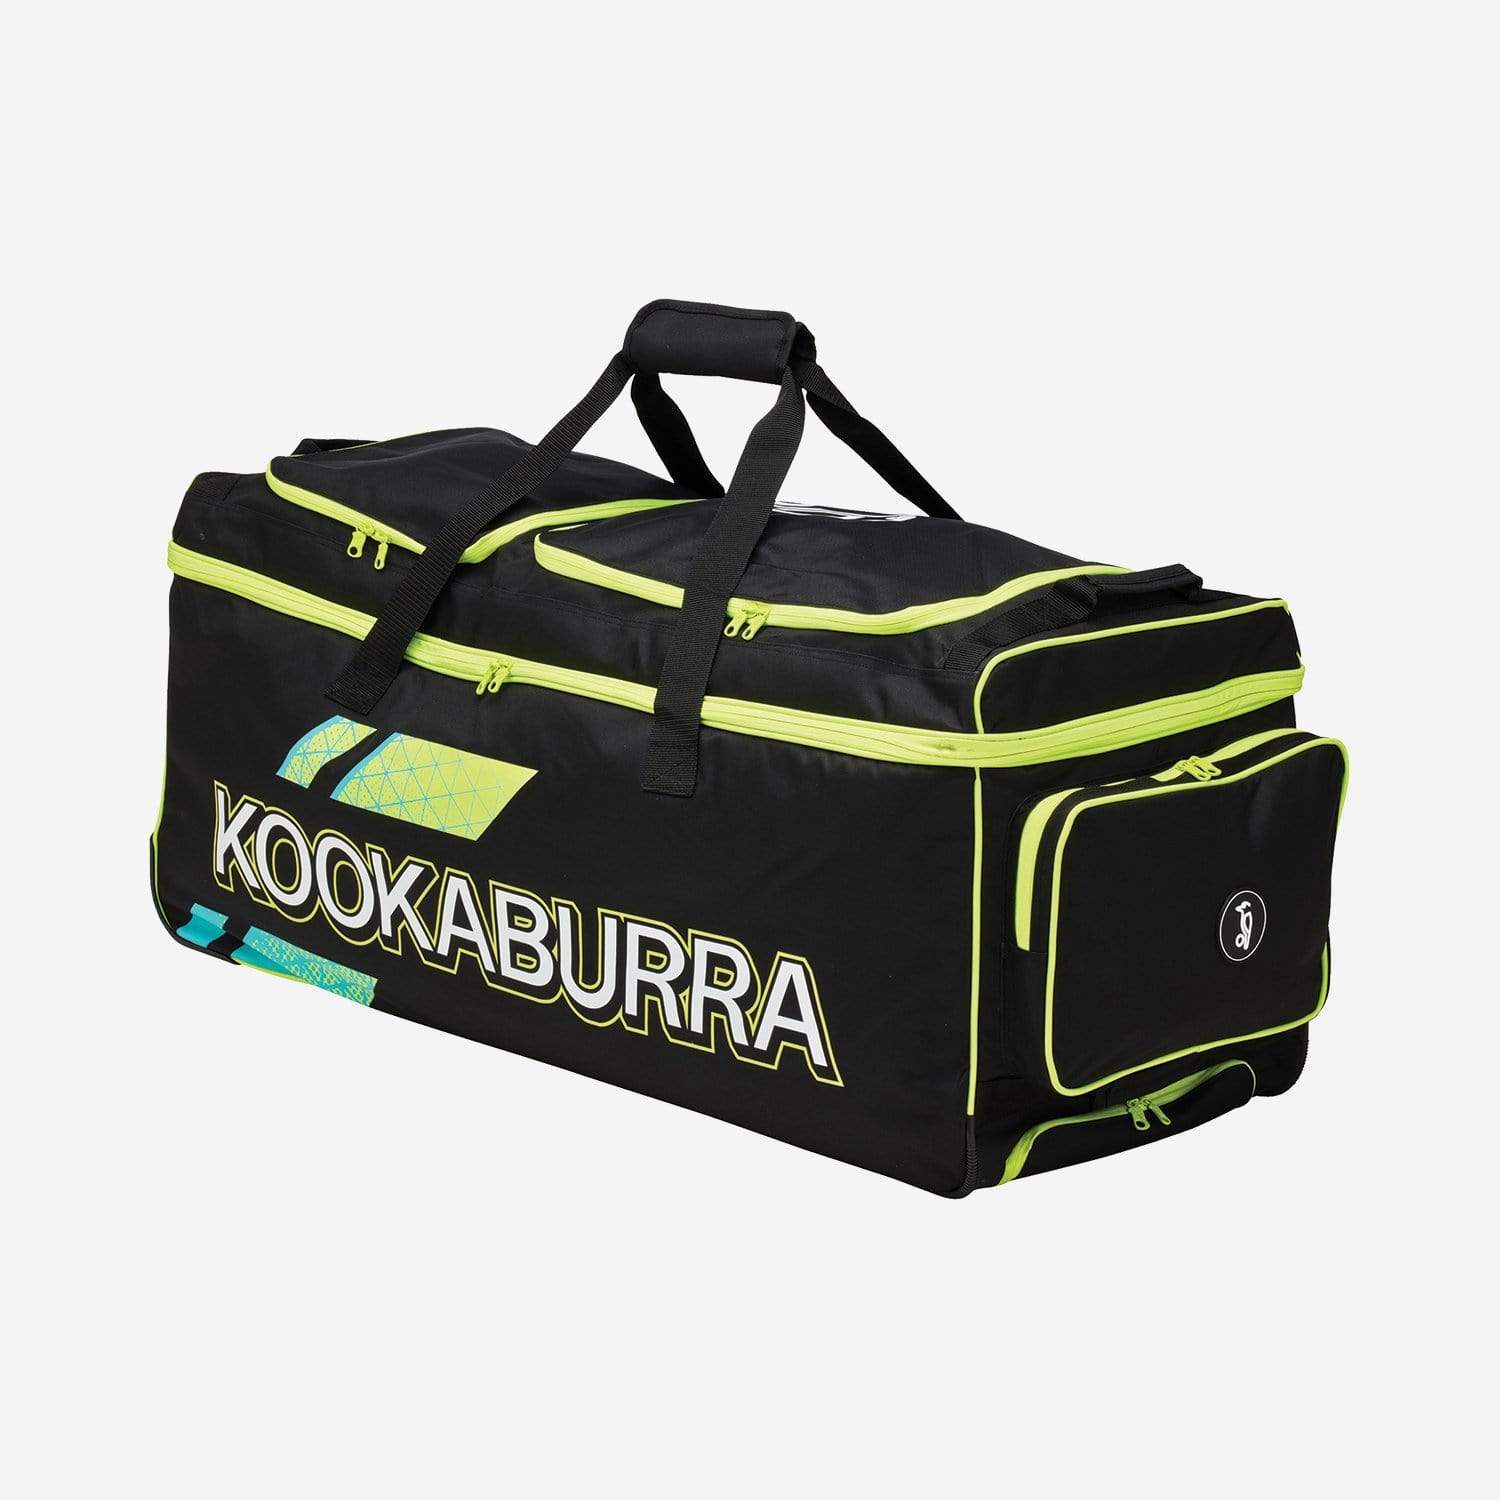 Kookaburra Cricket Bags Yellow Kookaburra Pro 1.0 Wheelie Cricket Bag